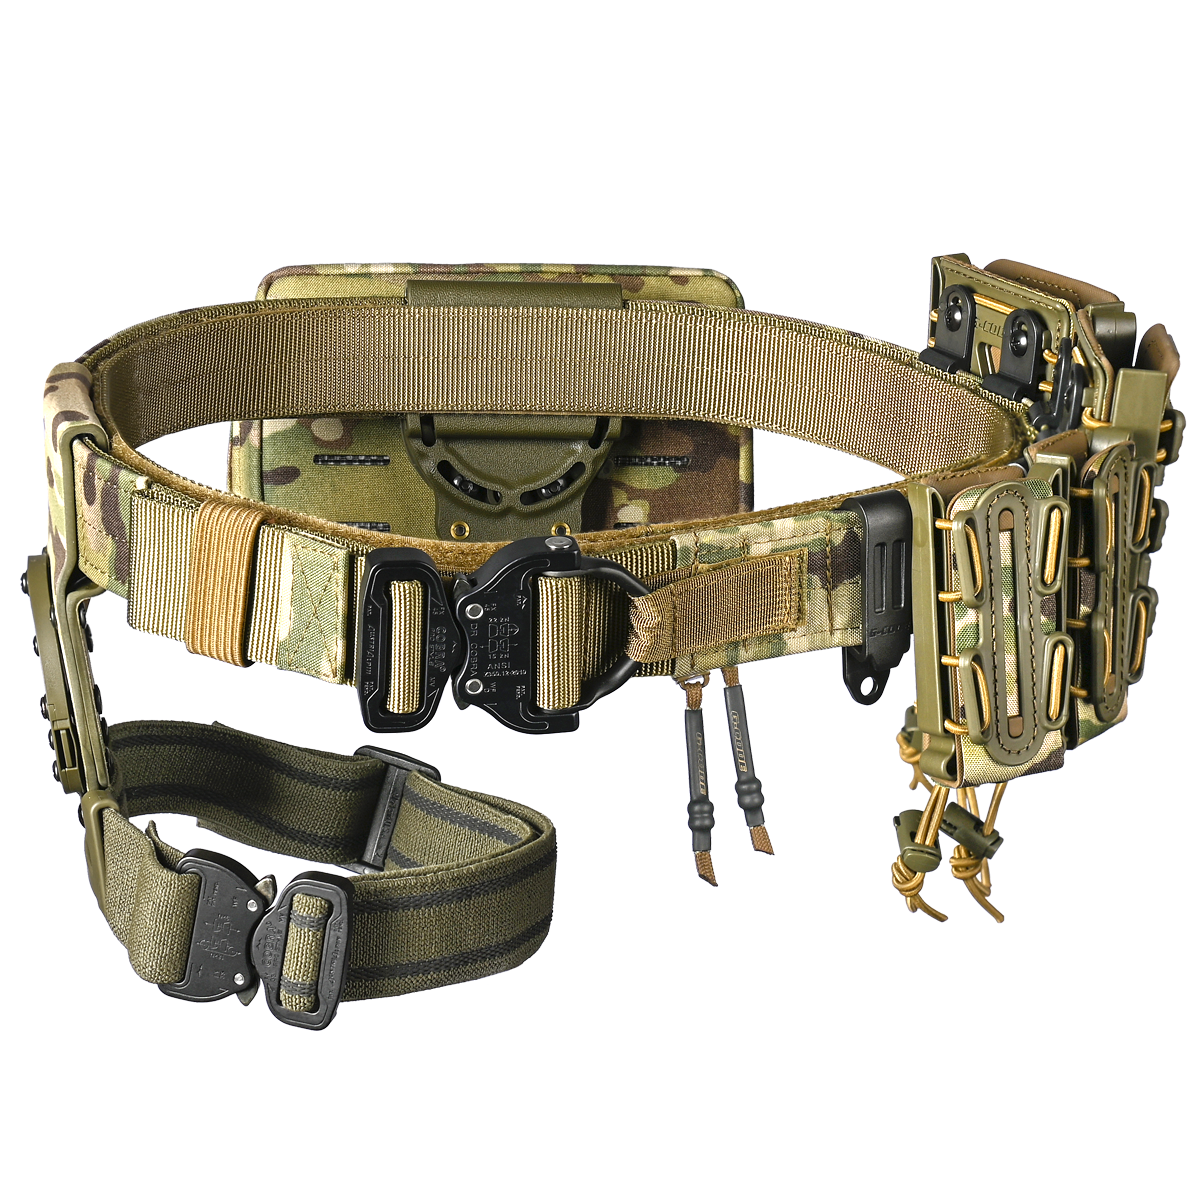 Outer Gun Belt - Two Layer Shooting Platform System - Warrior Gear –  WARRIOR GEAR